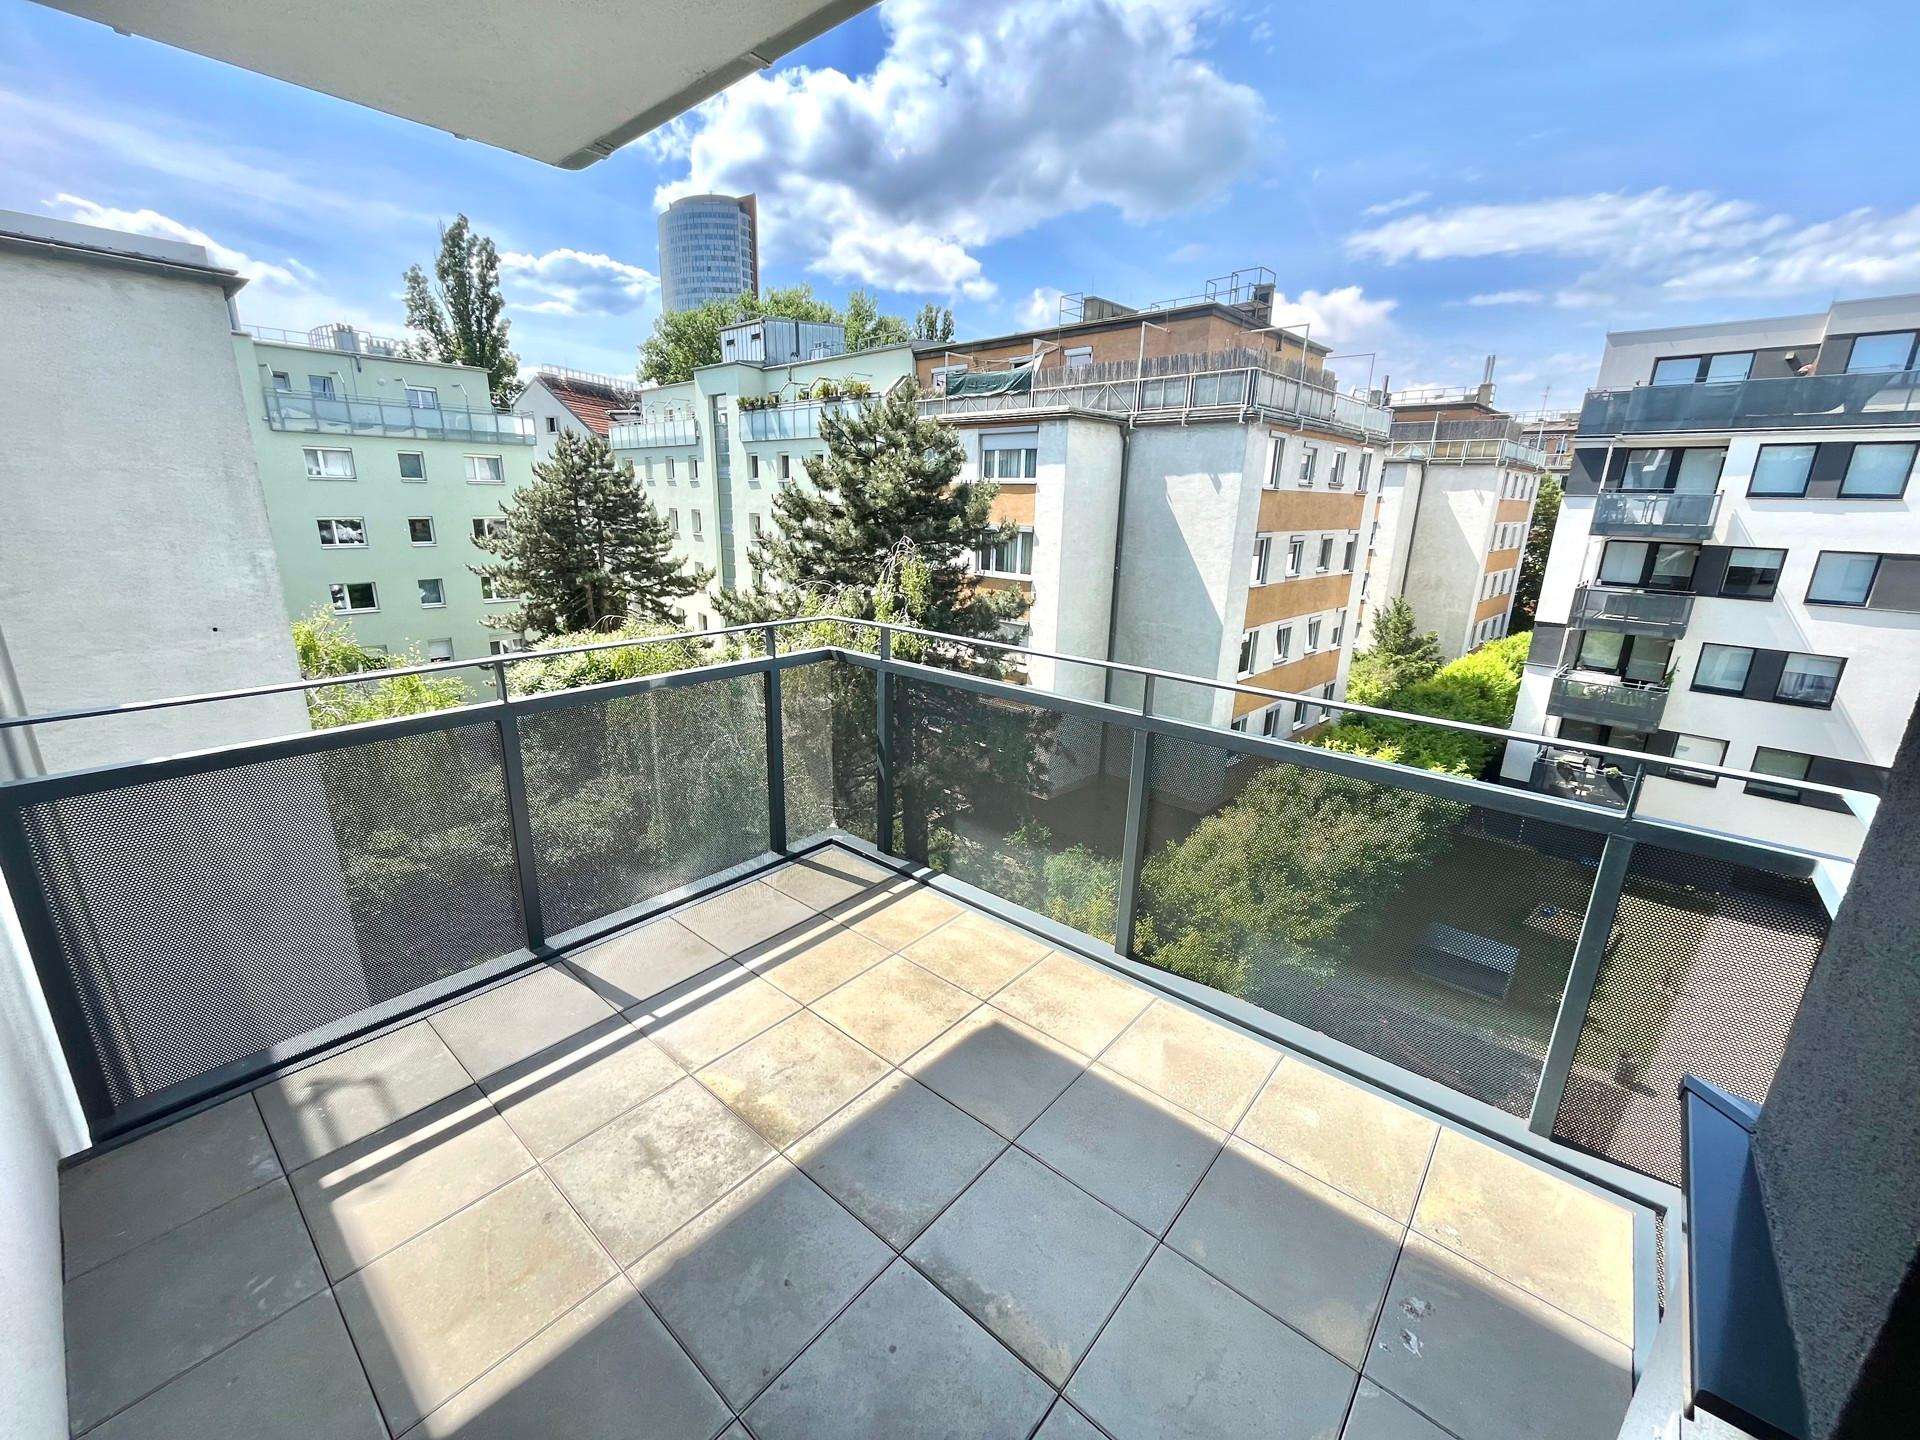 PROVISIONSFREI: 2 Zimmer Wohnung mit Balkon- Nähe U6 Floridsdorf in 1210 Wien zu mieten